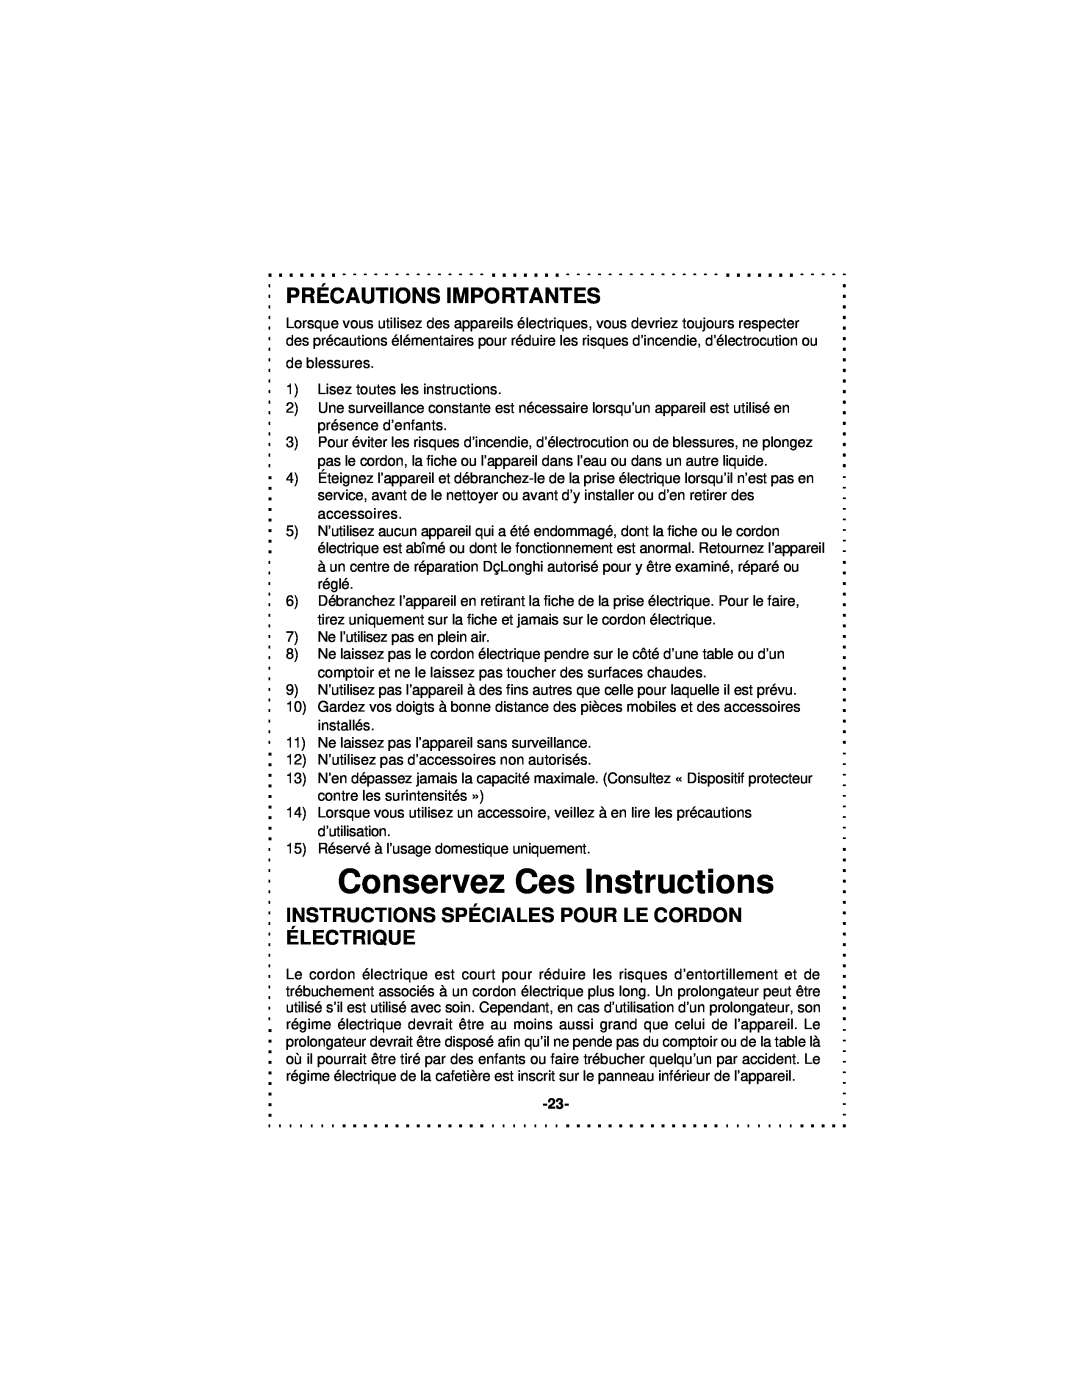 DeLonghi DSM5 - 7 Series instruction manual Conservez Ces Instructions, Précautions Importantes 